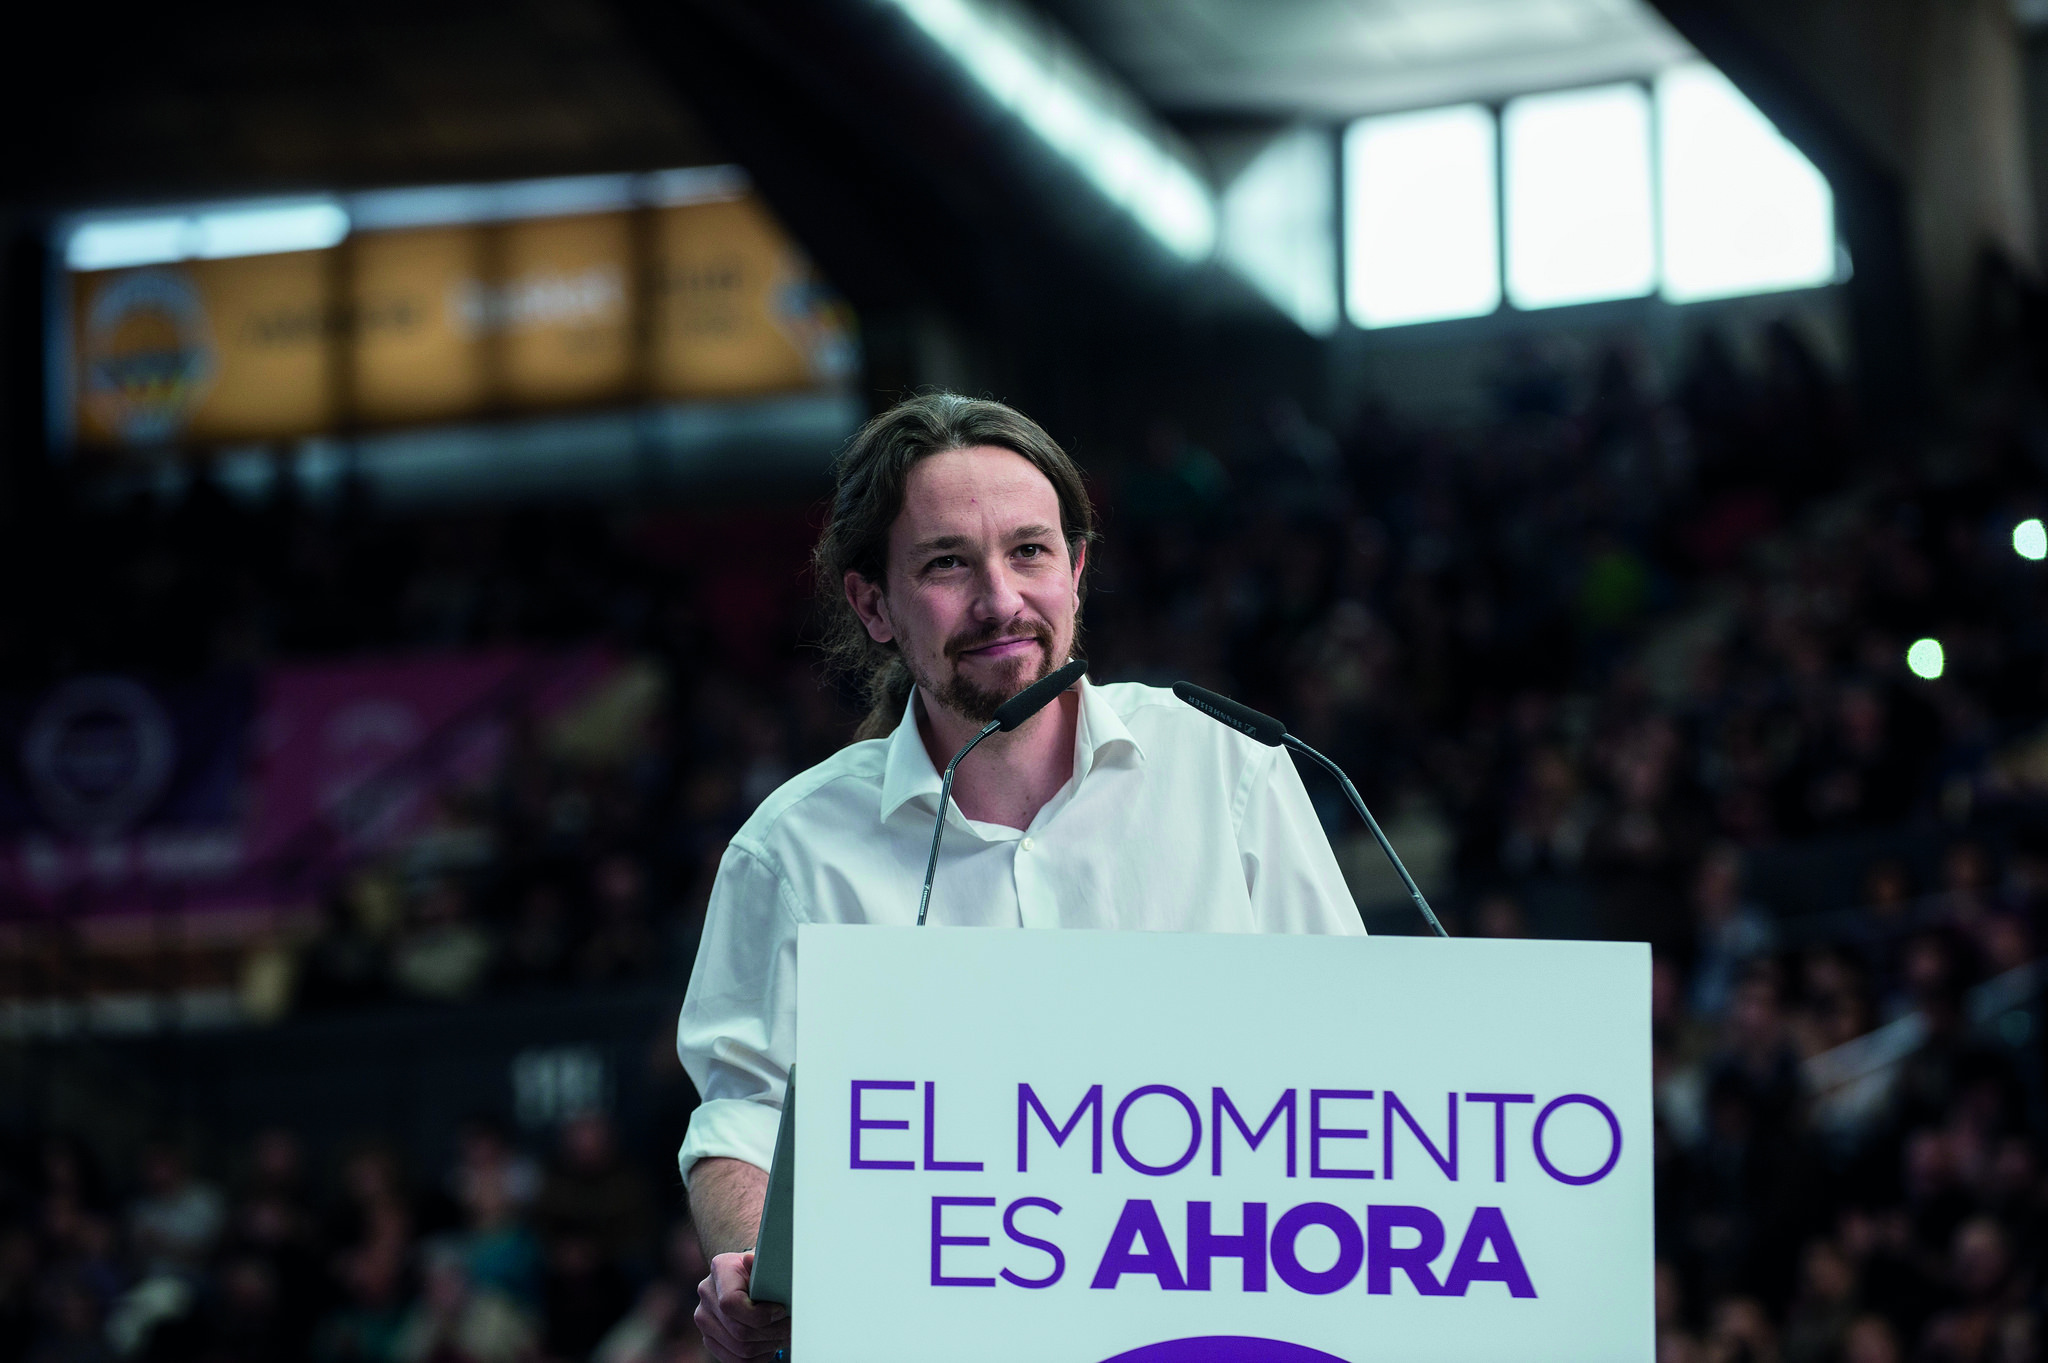 Pablo Iglesias tras las rejas 13 años por el "Caso Dina", la apuesta de Vox